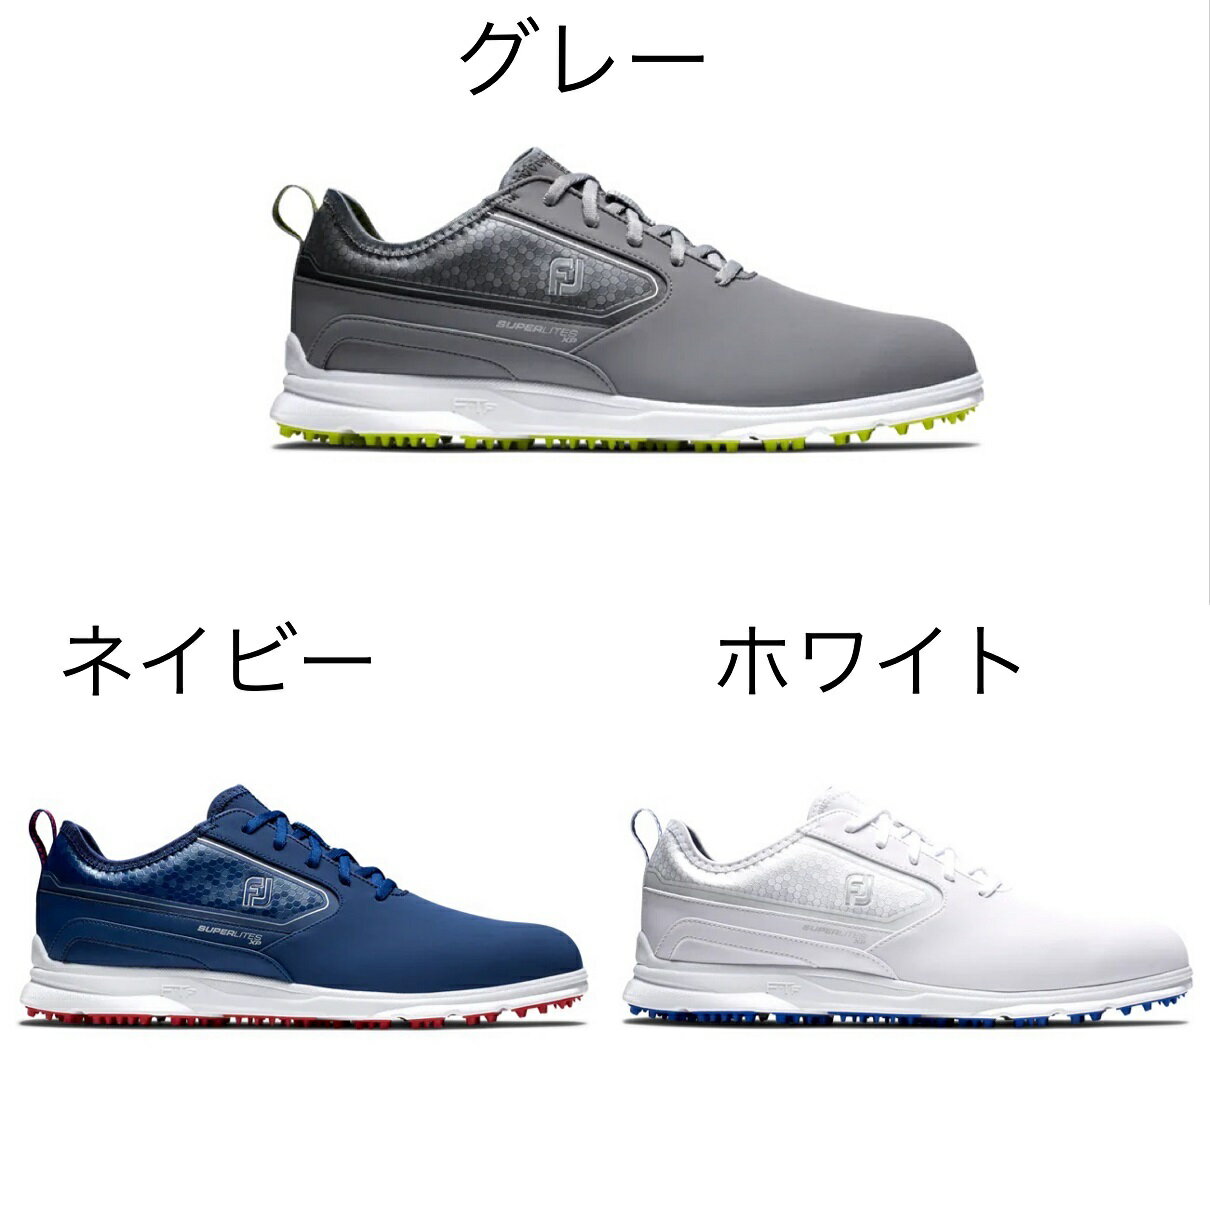 【日本未発売 USモデル】Footjoy Superlites XP Golf Shoes フットジョイ ゴルフシューズ【送料無料】